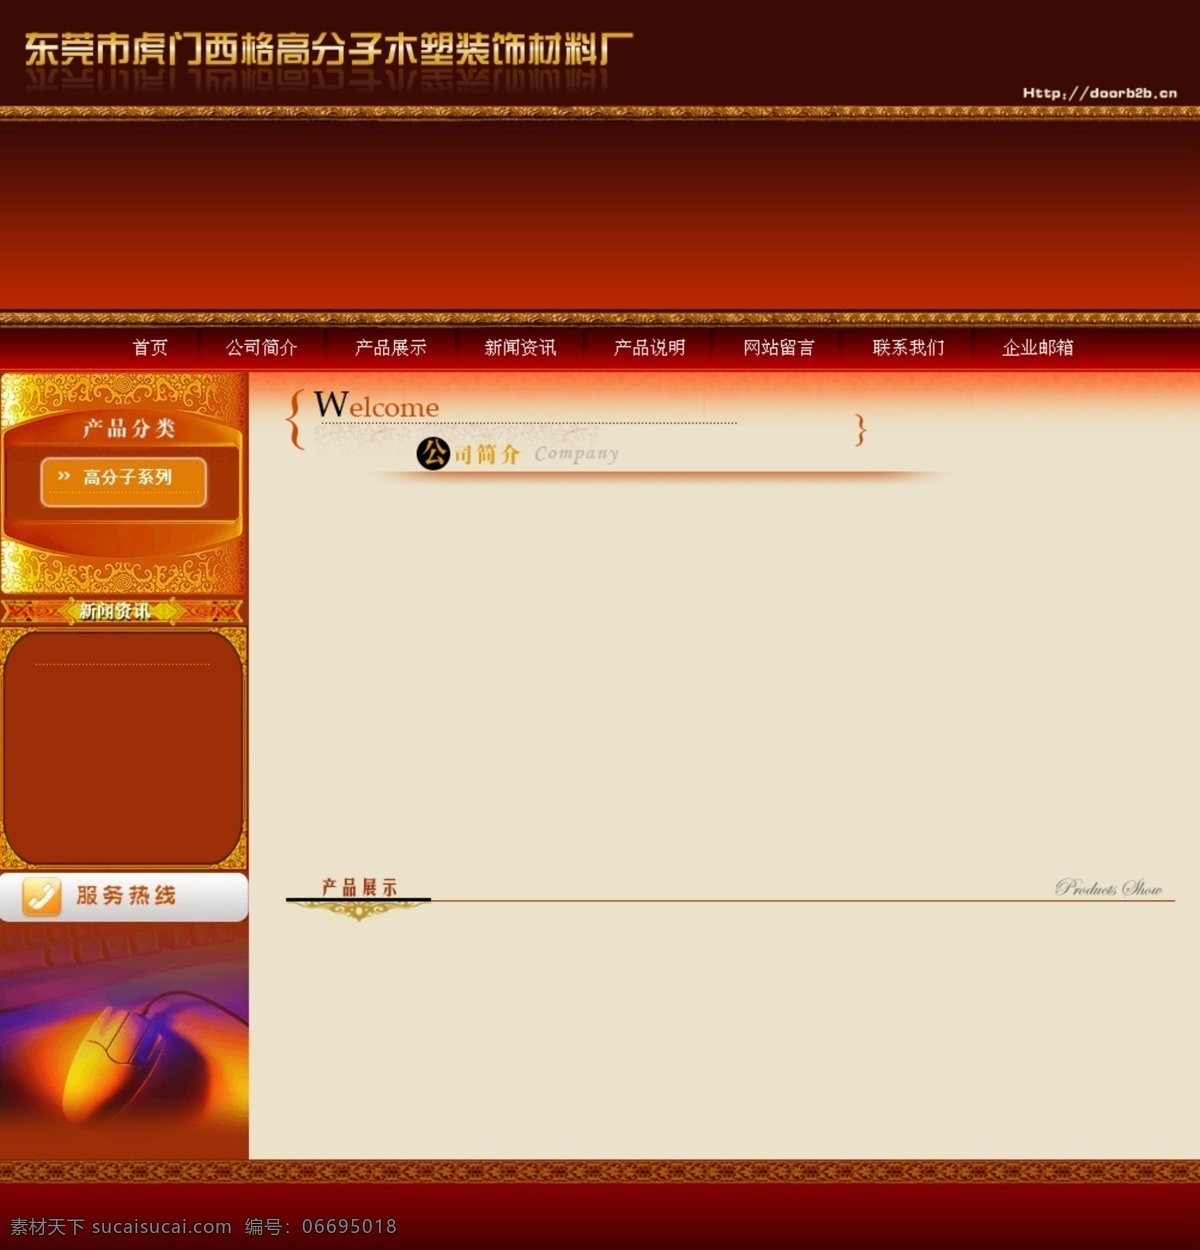 木 塑 装饰 古典 风格 网页模板 暗红色背景 古典风格 中国风格 木塑 网页素材